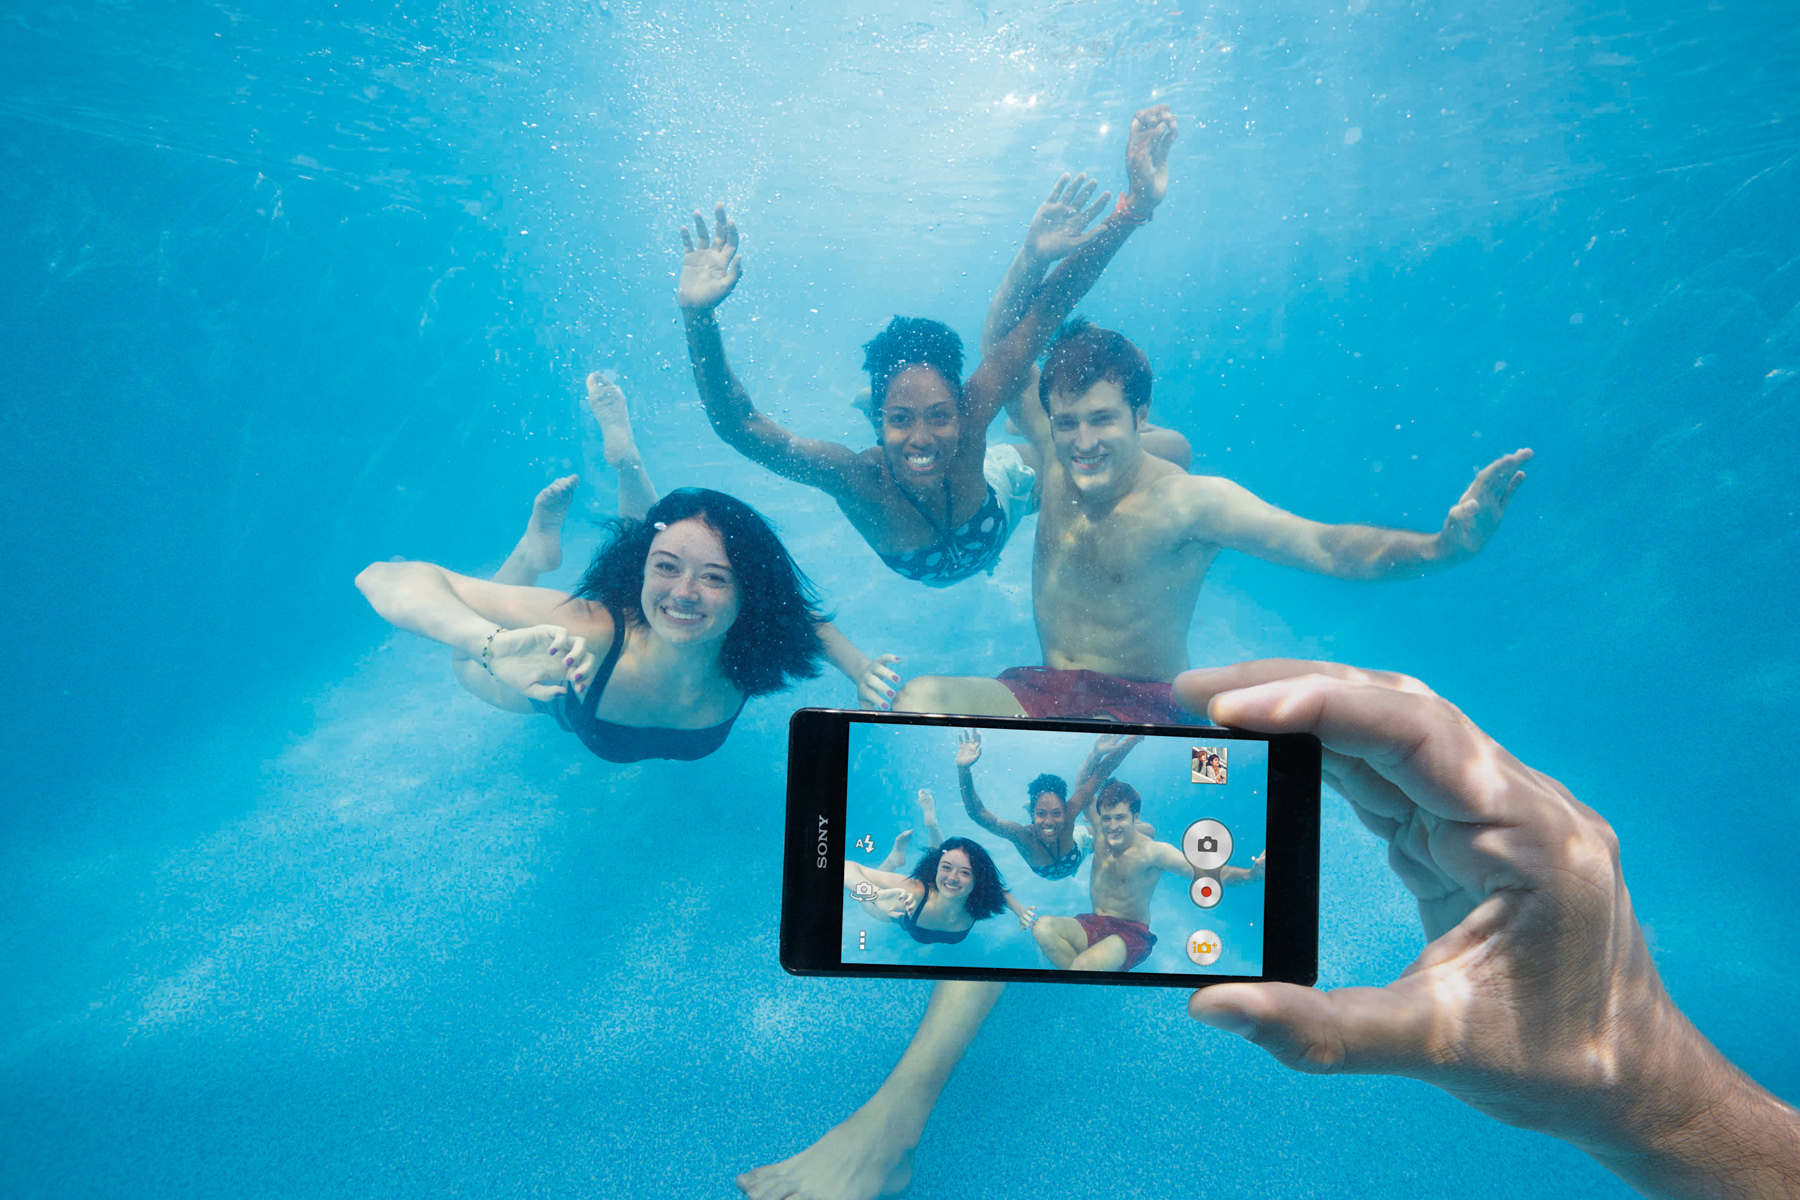 Sony Xperia Z3 Underwater